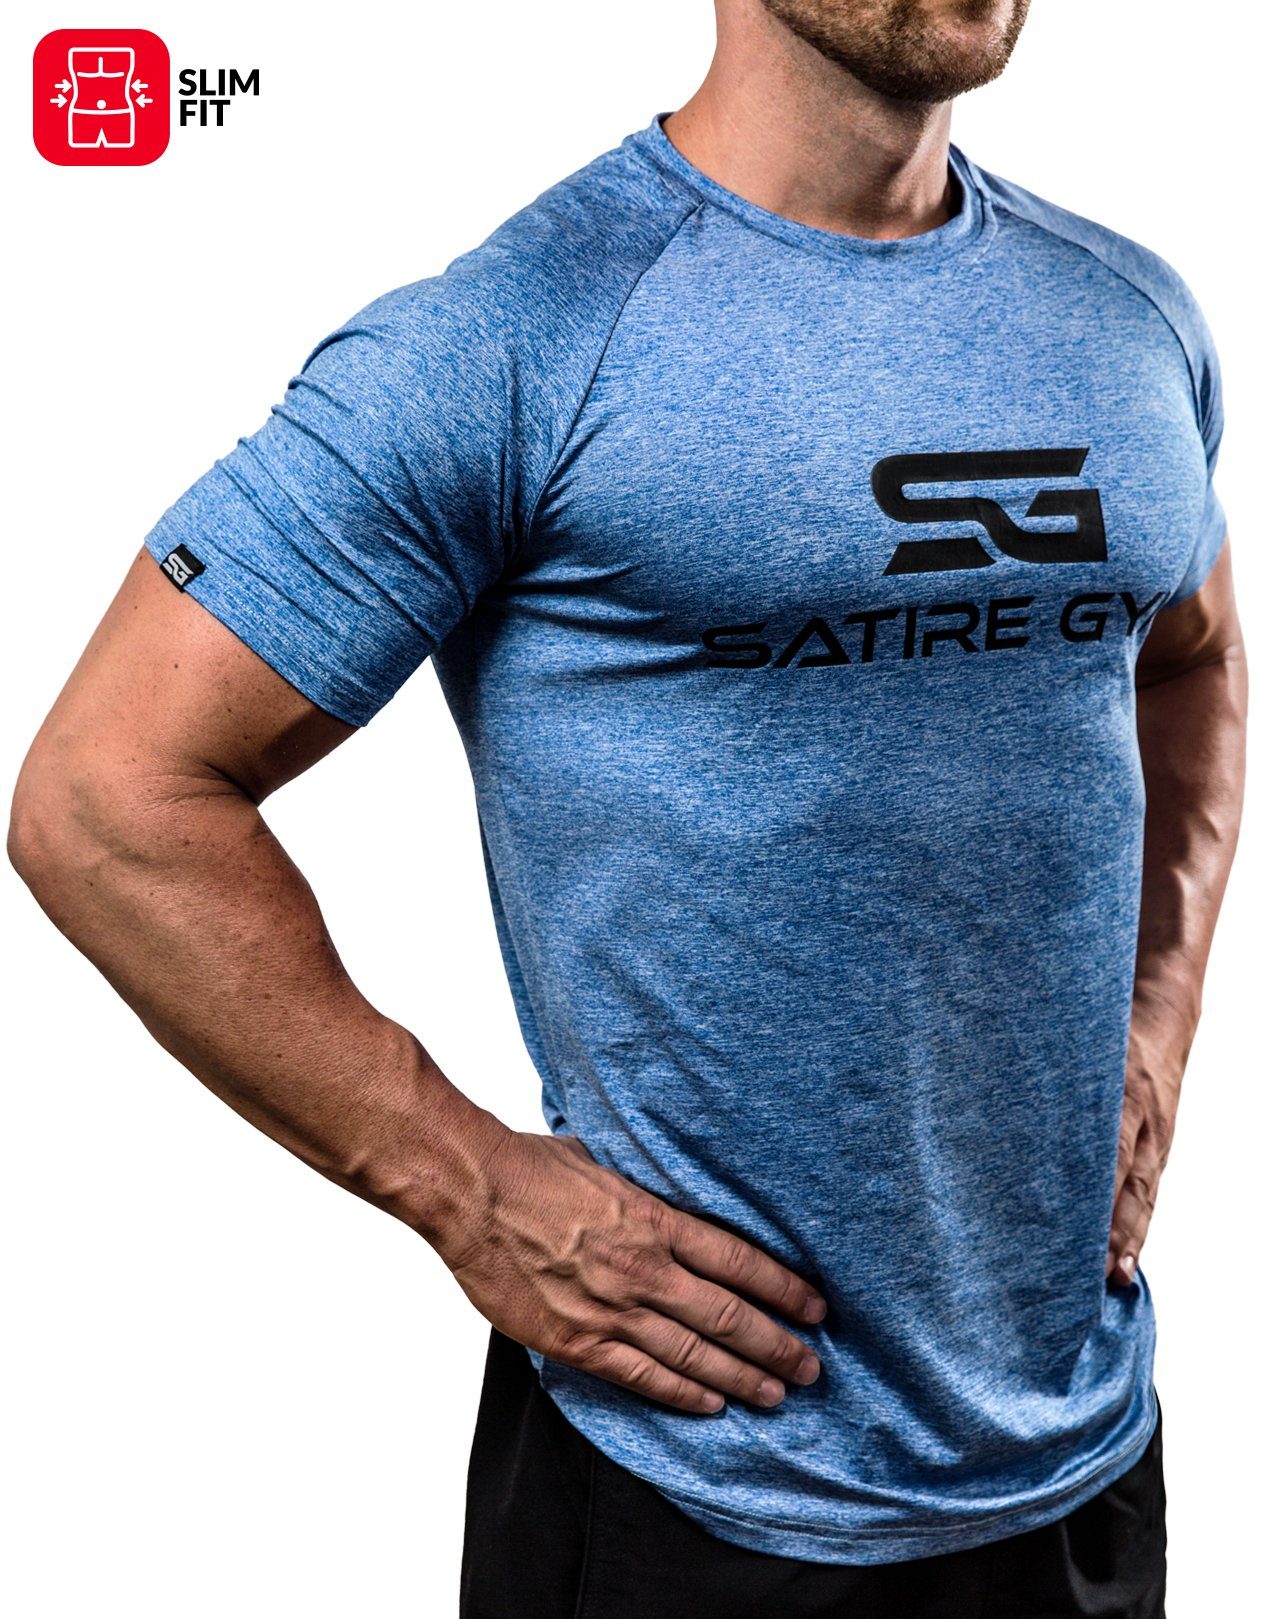 Damen Funktionsshirt S M L blau Workout Shirt Trainingsshirt Sportshirt Fitness 